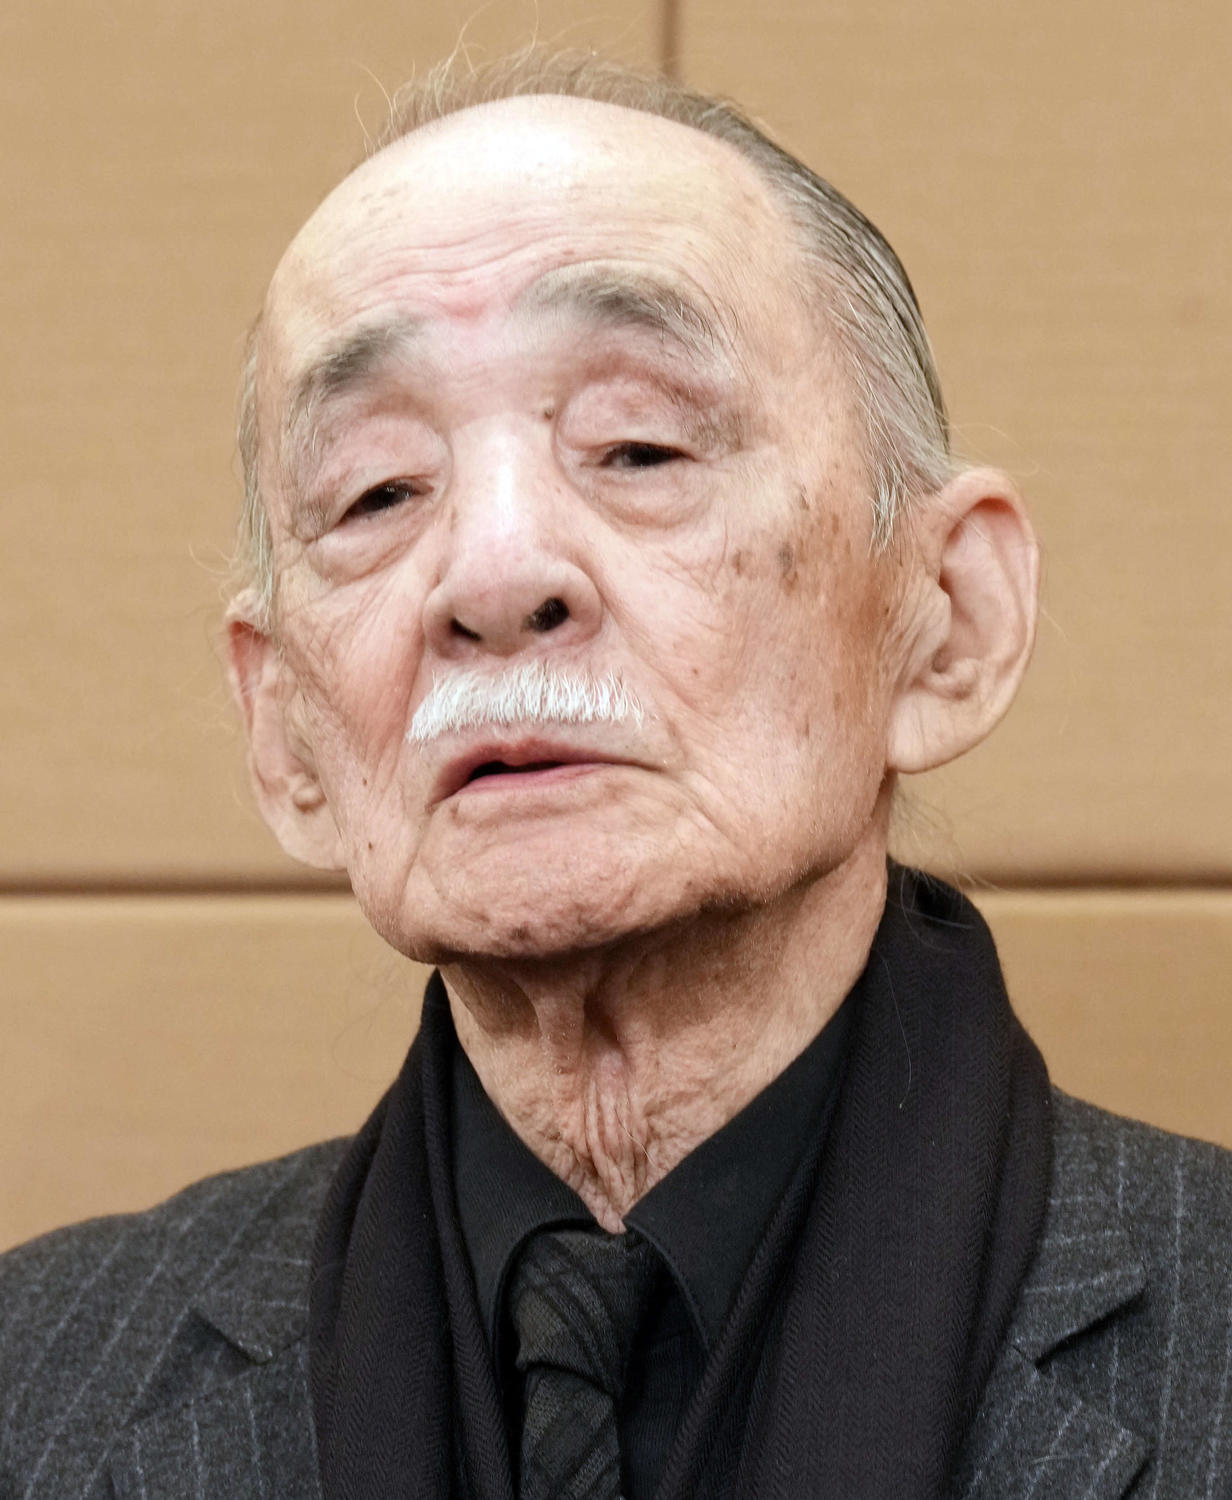 中村メイコさん、夫神津善行さんの腕の中で亡くなる「人生の幕の引き方が非常にきれいだった」(日刊スポーツ)